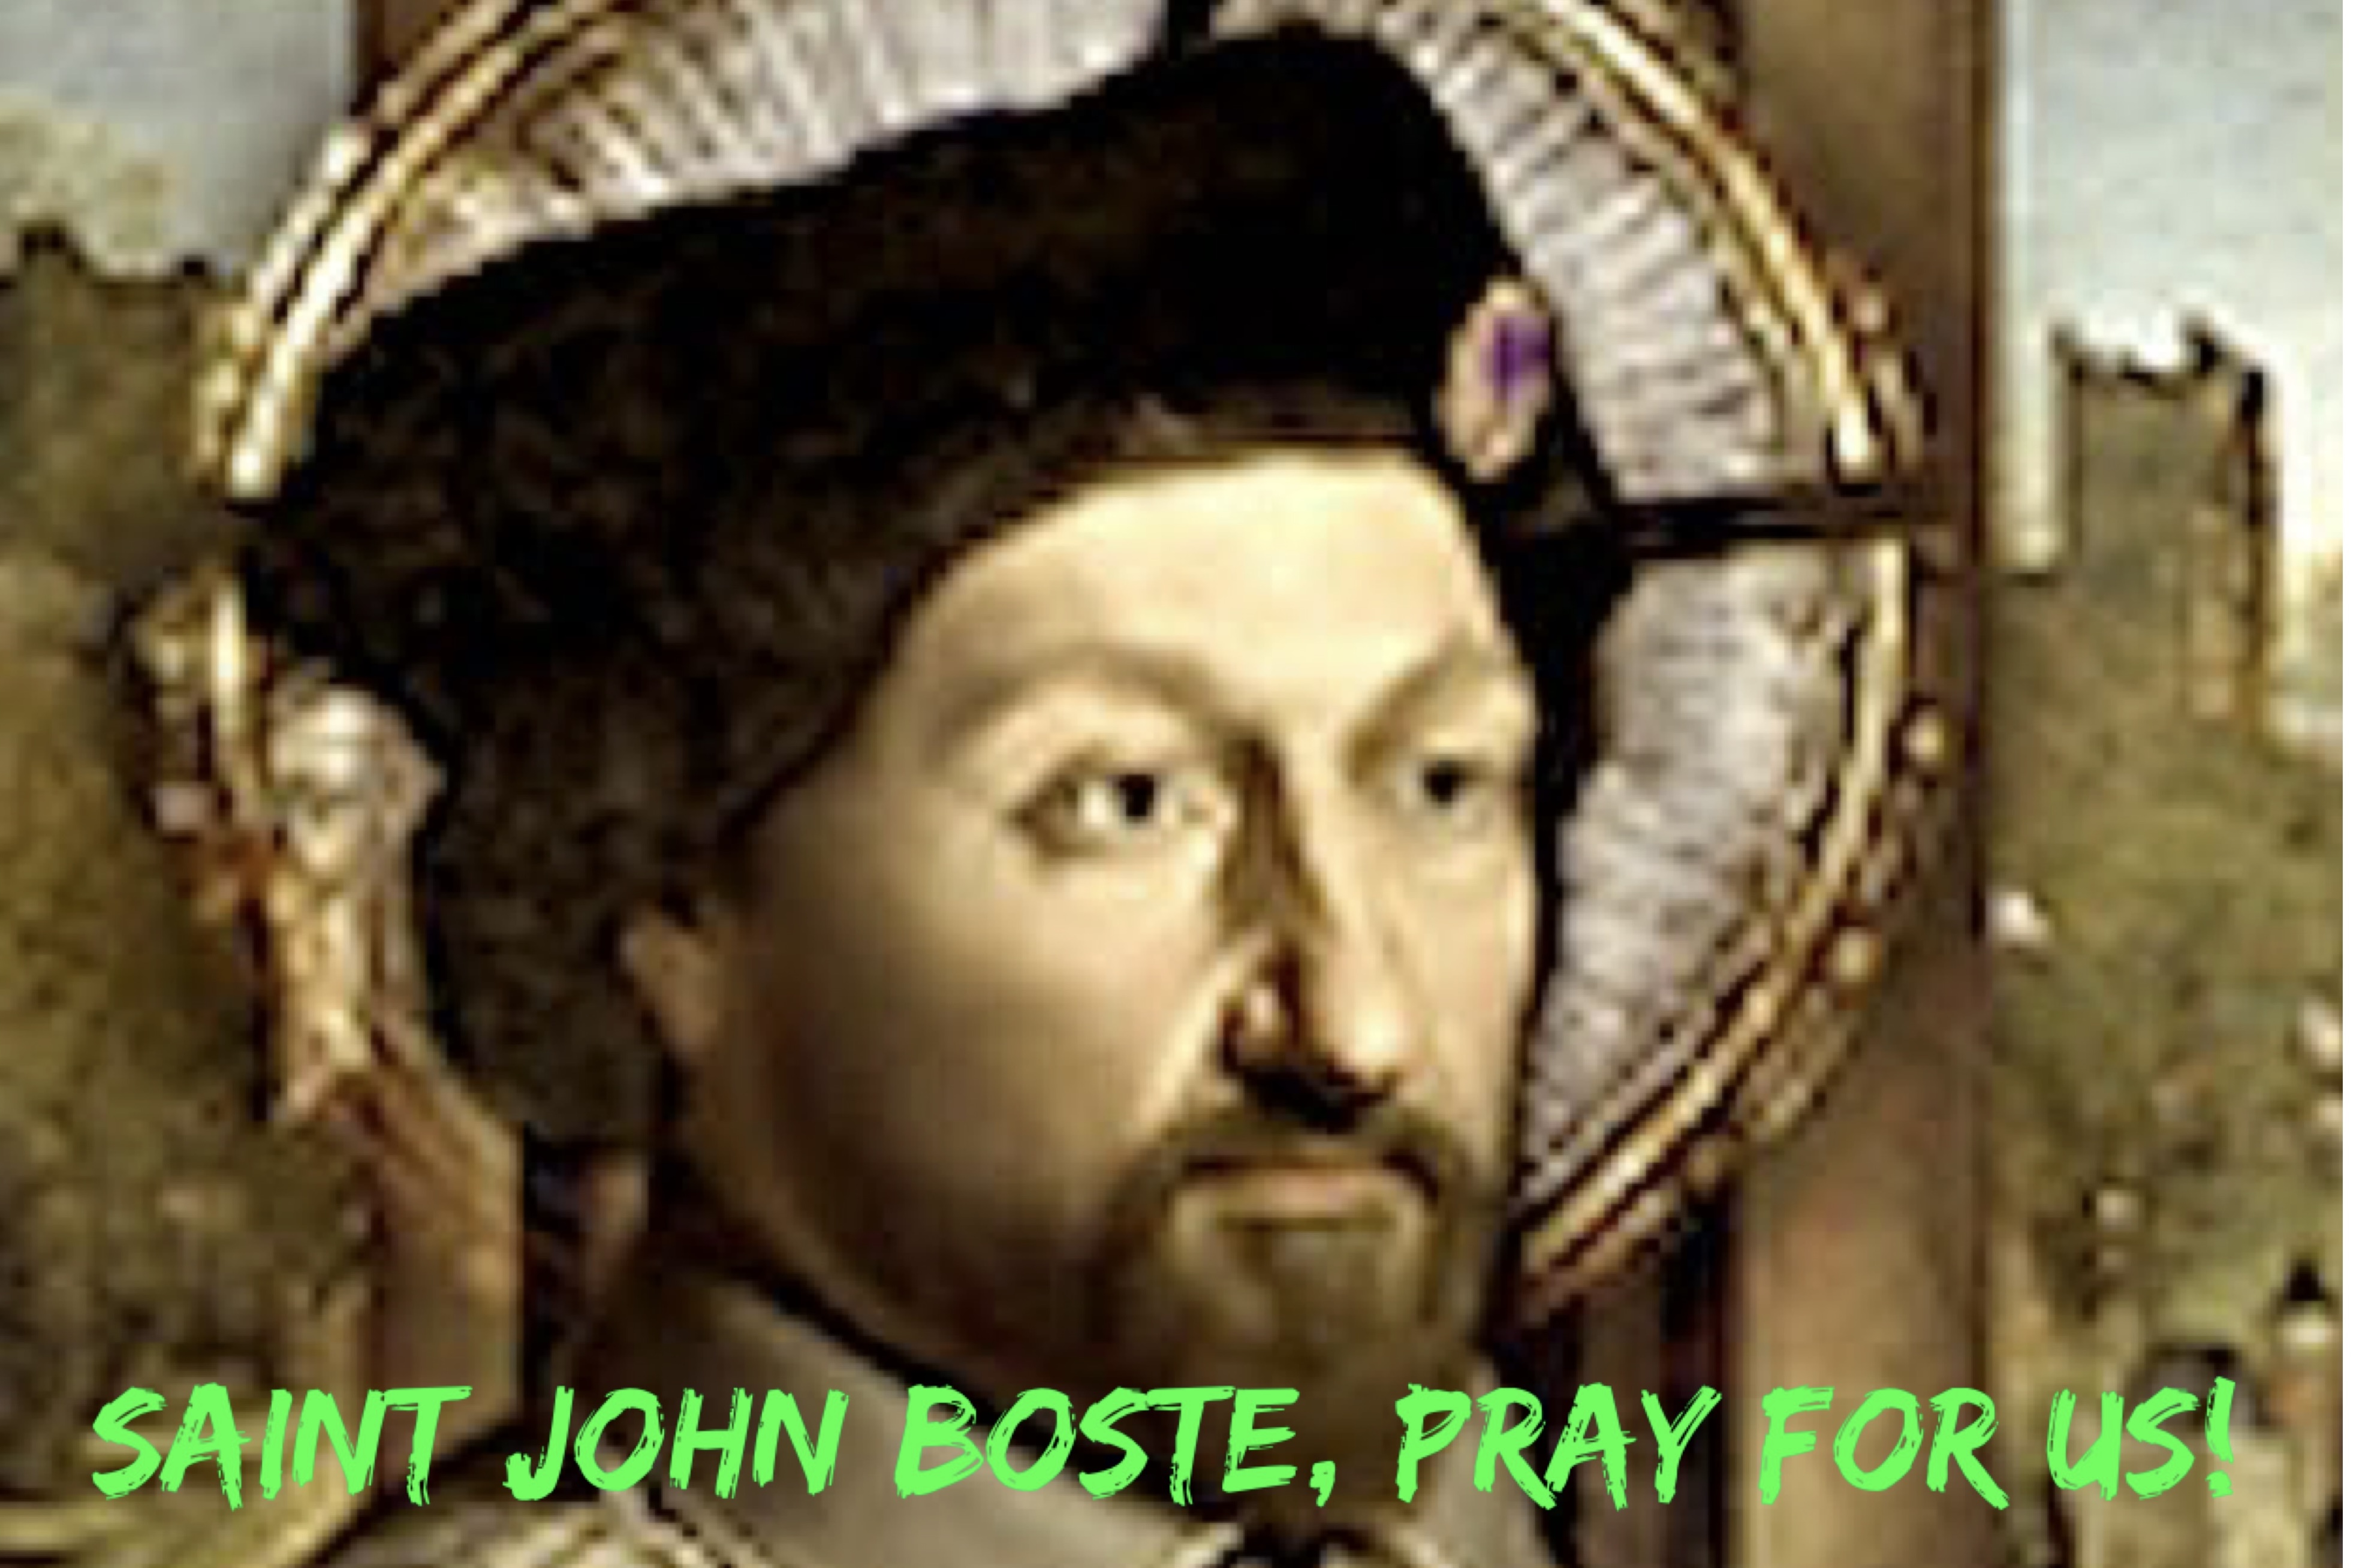 July 24th - Saint John Boste